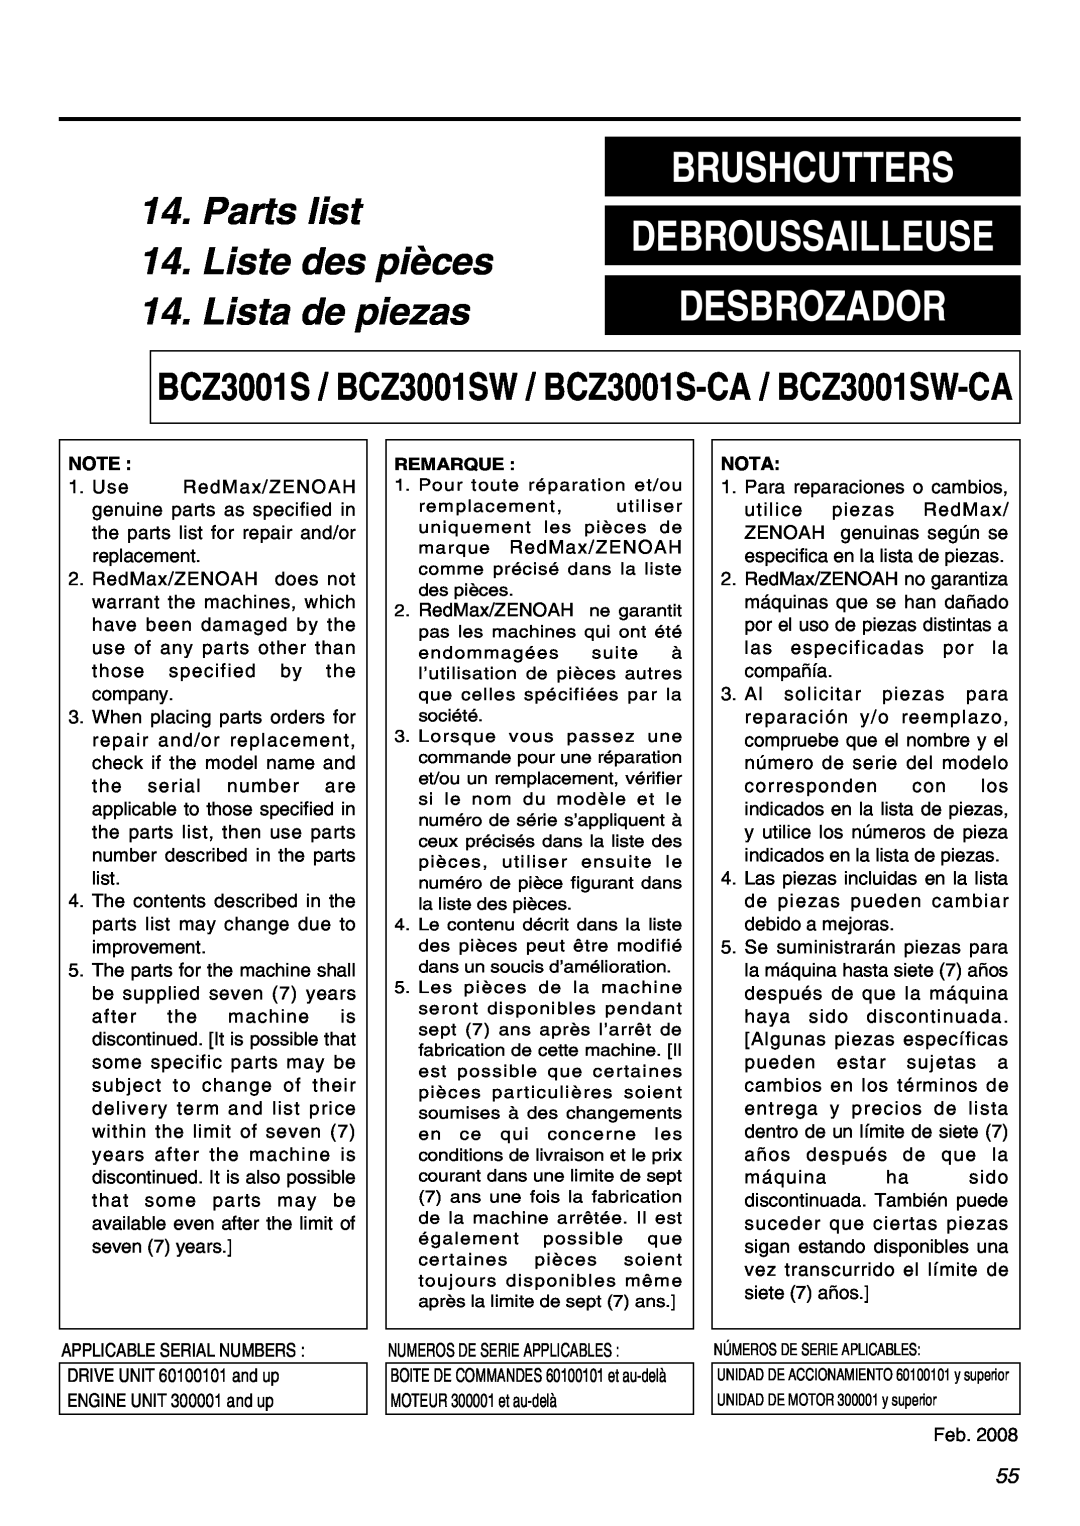 Zenoah BCZ3001S manual Parts list, Liste des pièces, Lista de piezas, Brushcutters, Desbrozador, Debroussailleuse 